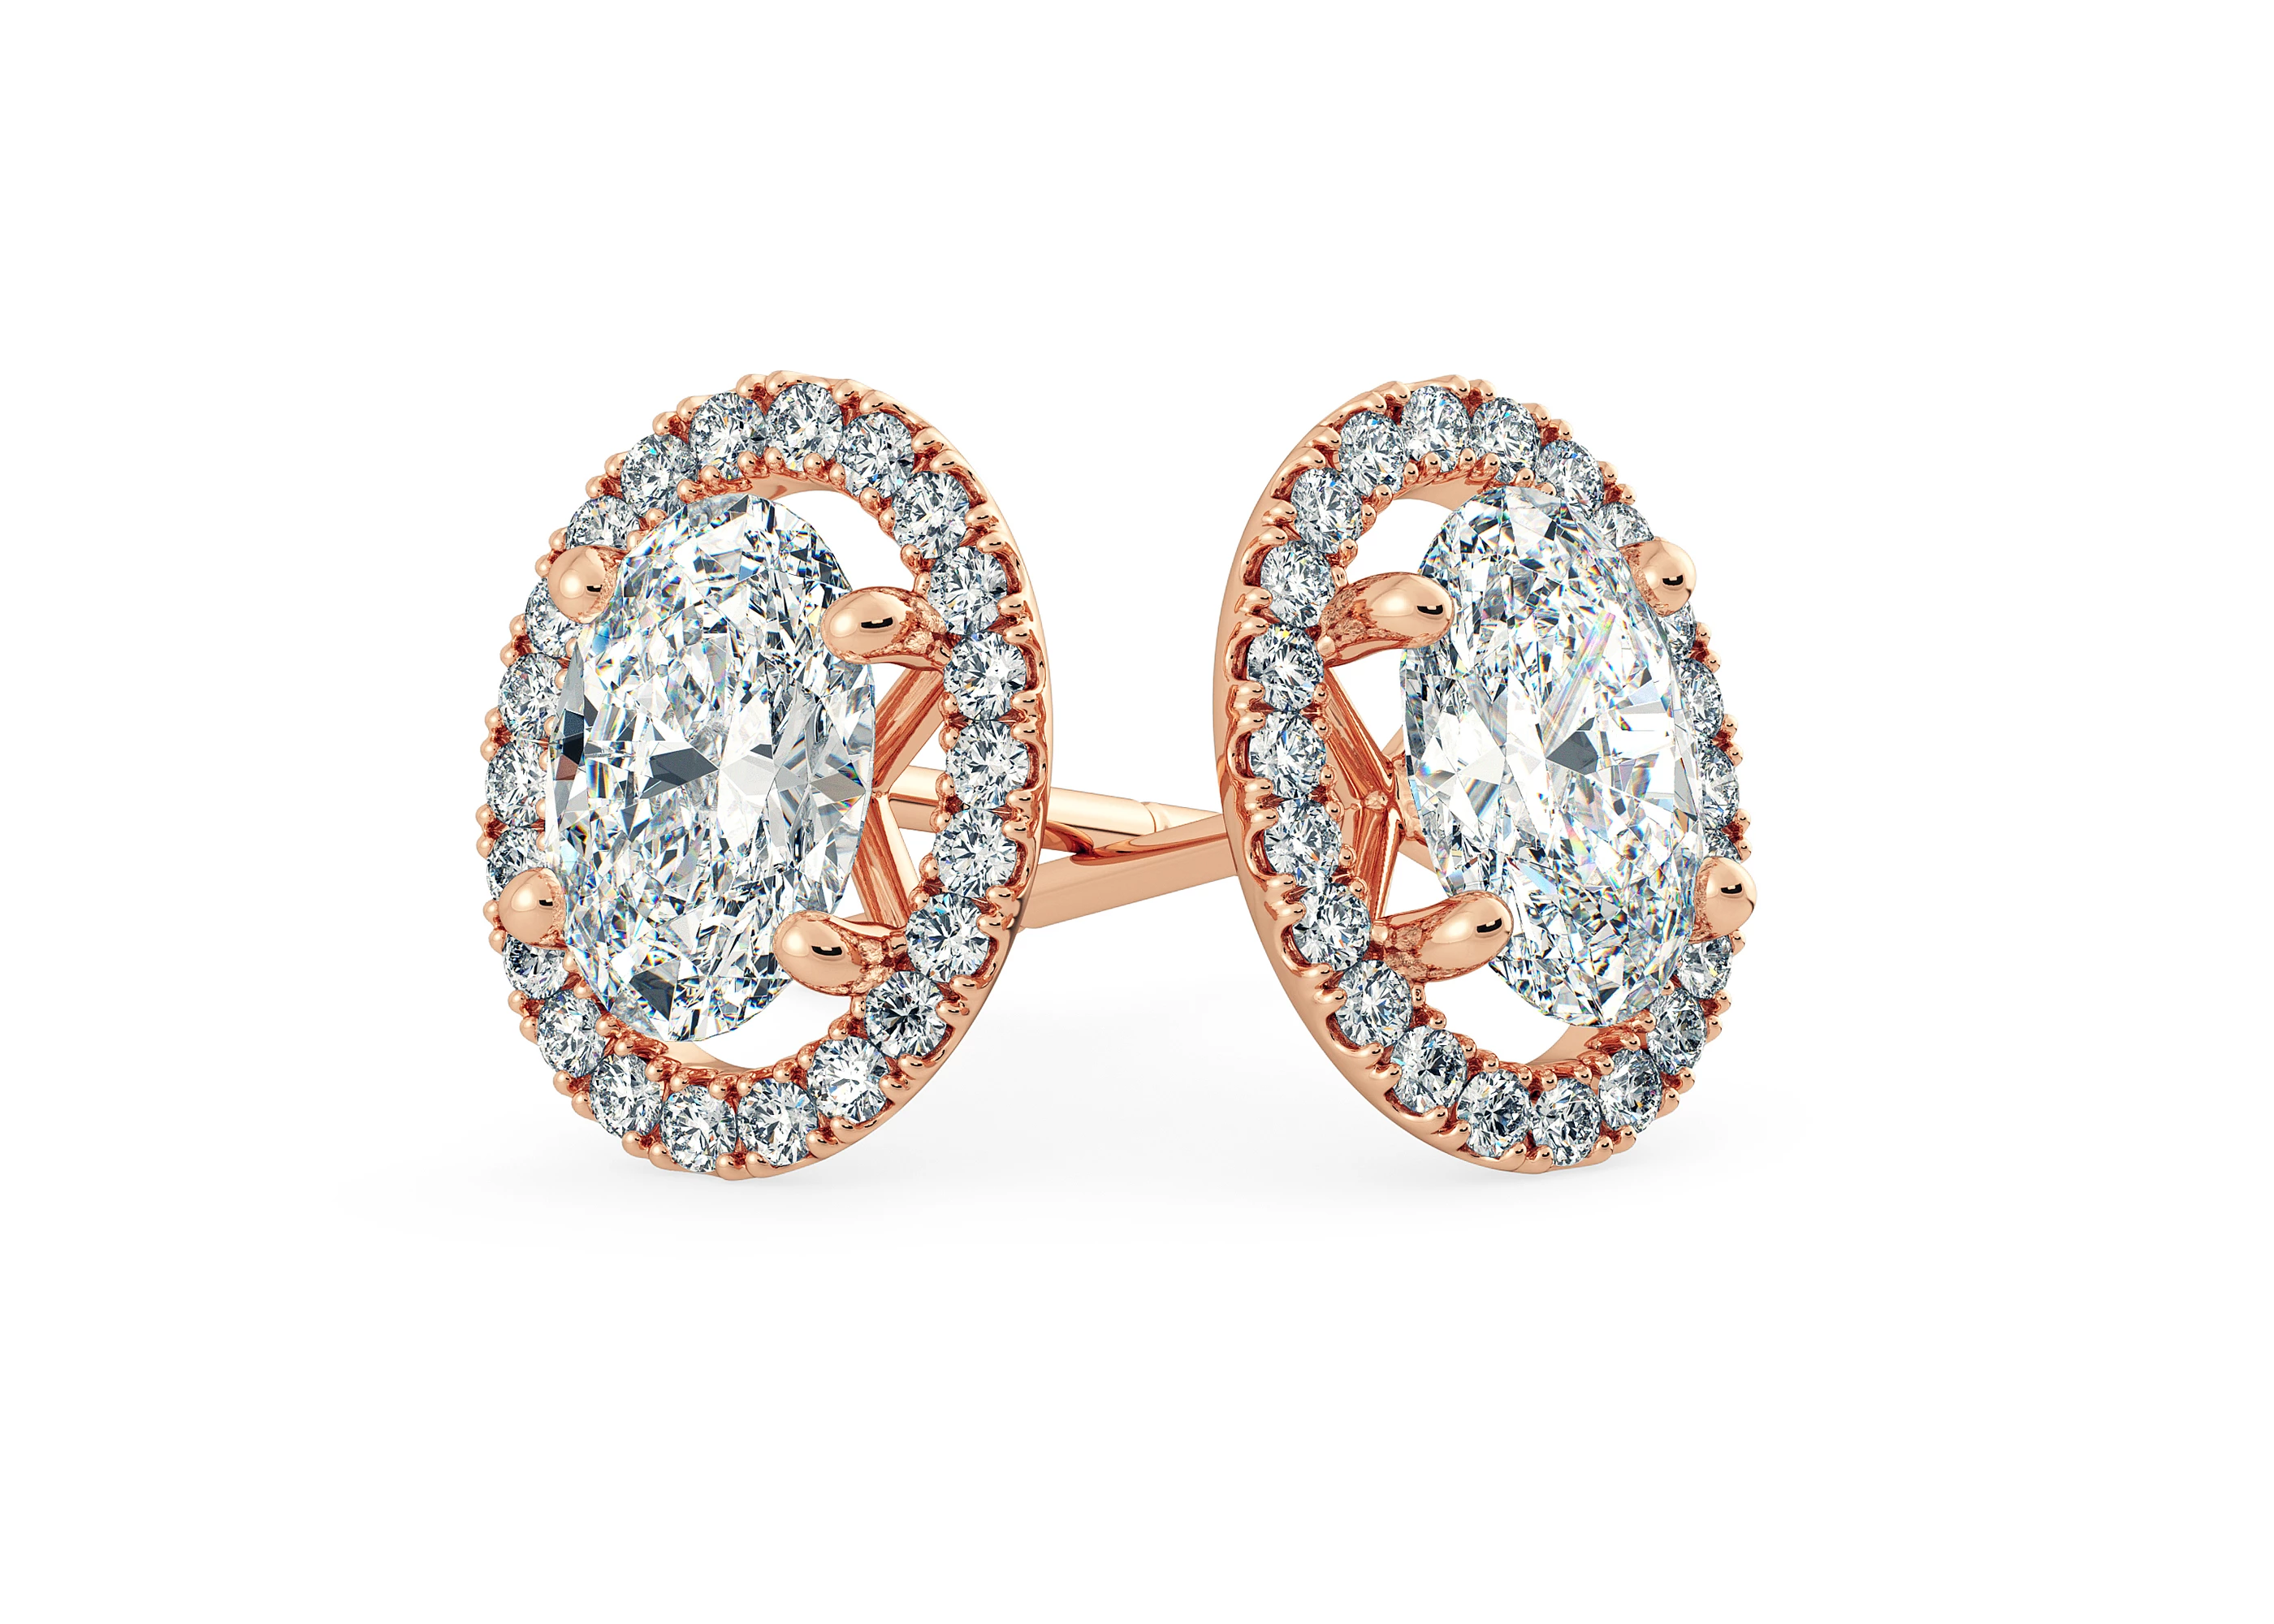 Bijou Oval Diamond Stud Earrings in 18K Rose Gold with Screw Backs